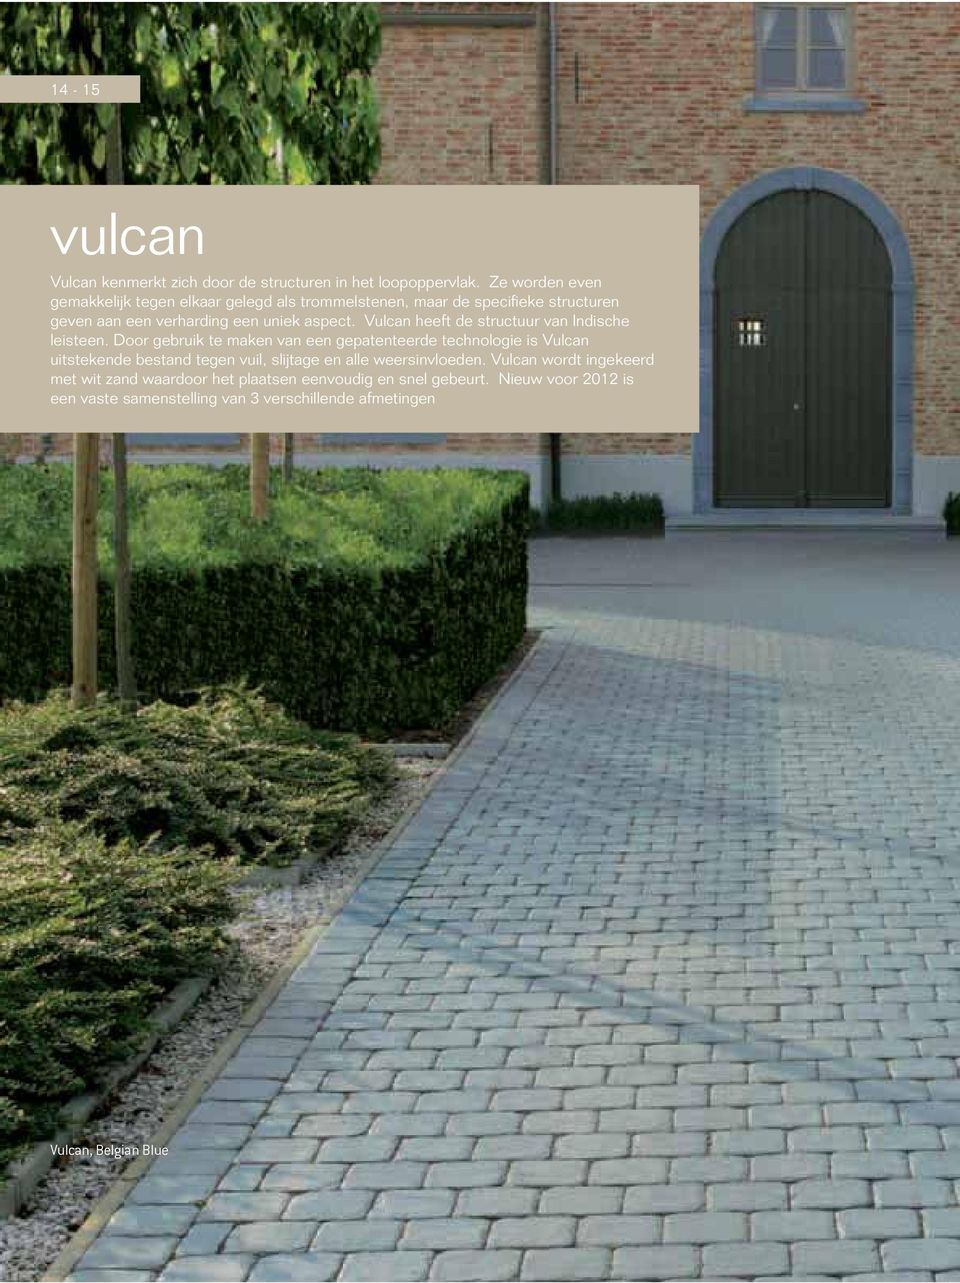 Door gebruik te maken van een gepatenteerde technologie is Vulcan uitstekende bestand tegen vuil, slijtage en alle